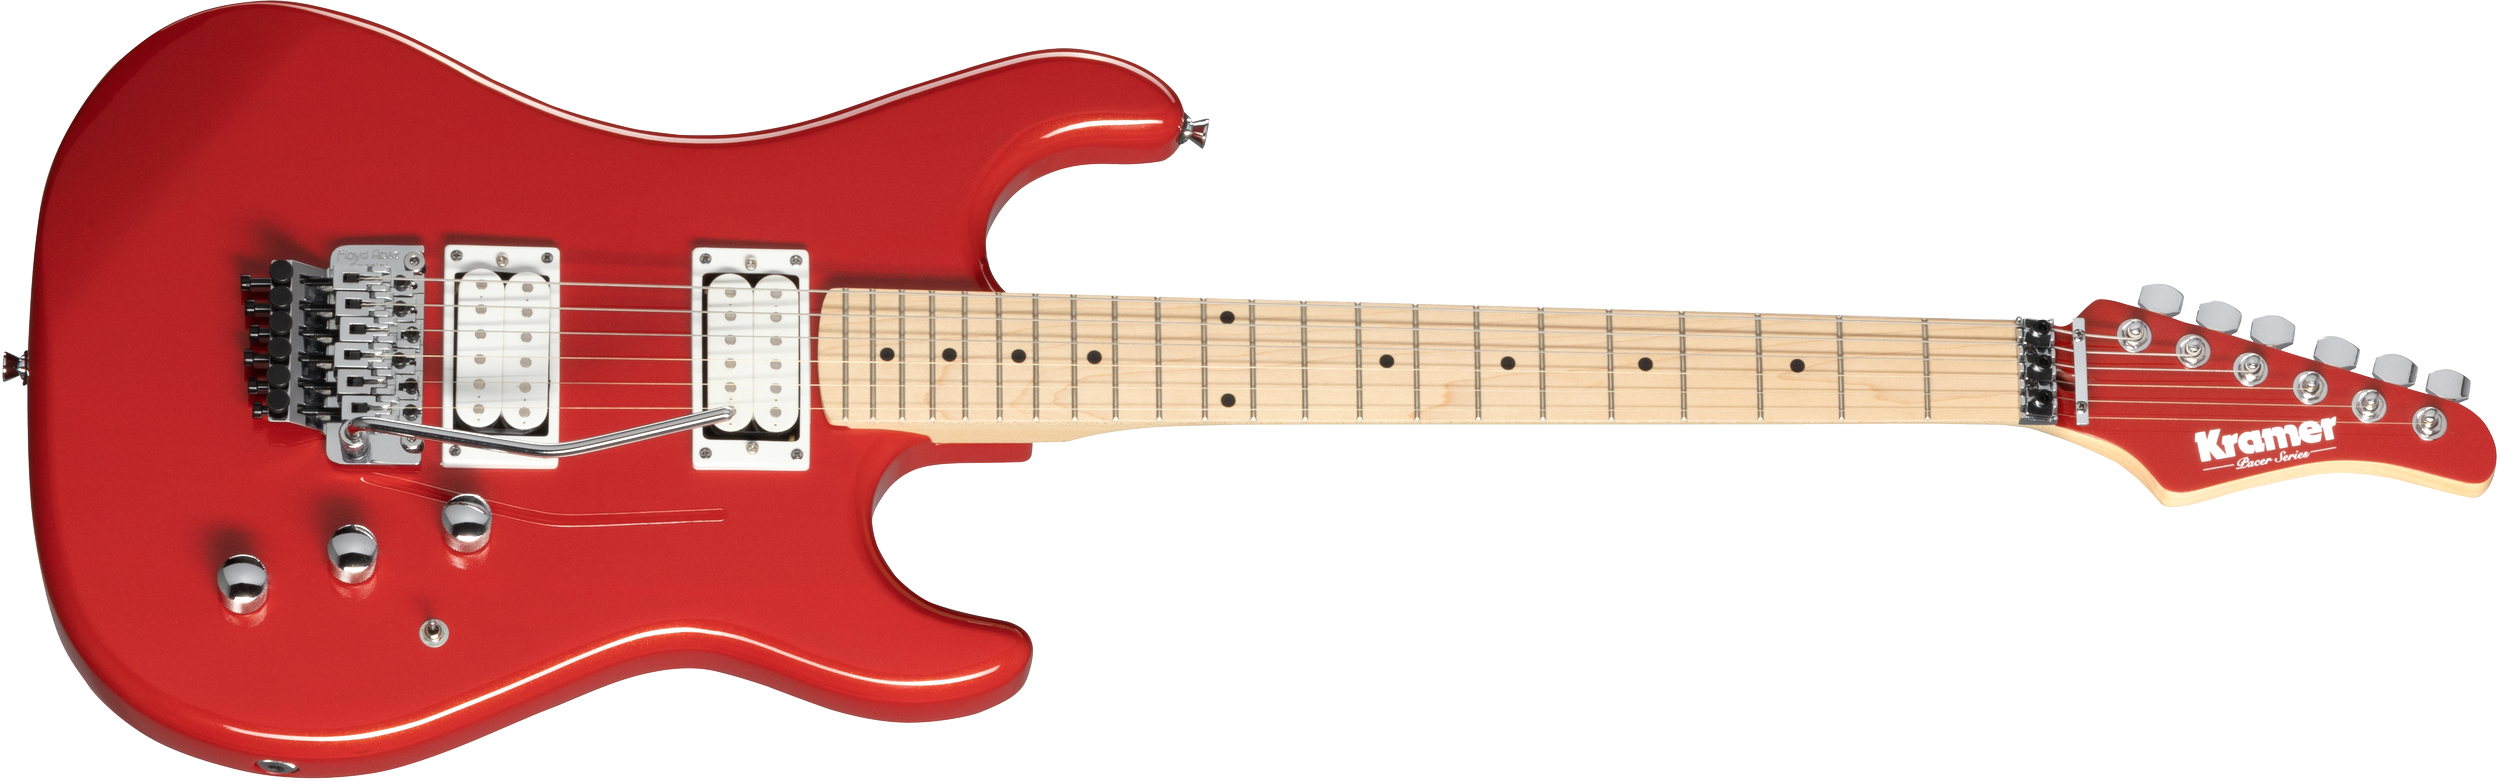 Kramer Guitars Pacer Classic FR Spesial elektrisk gitar